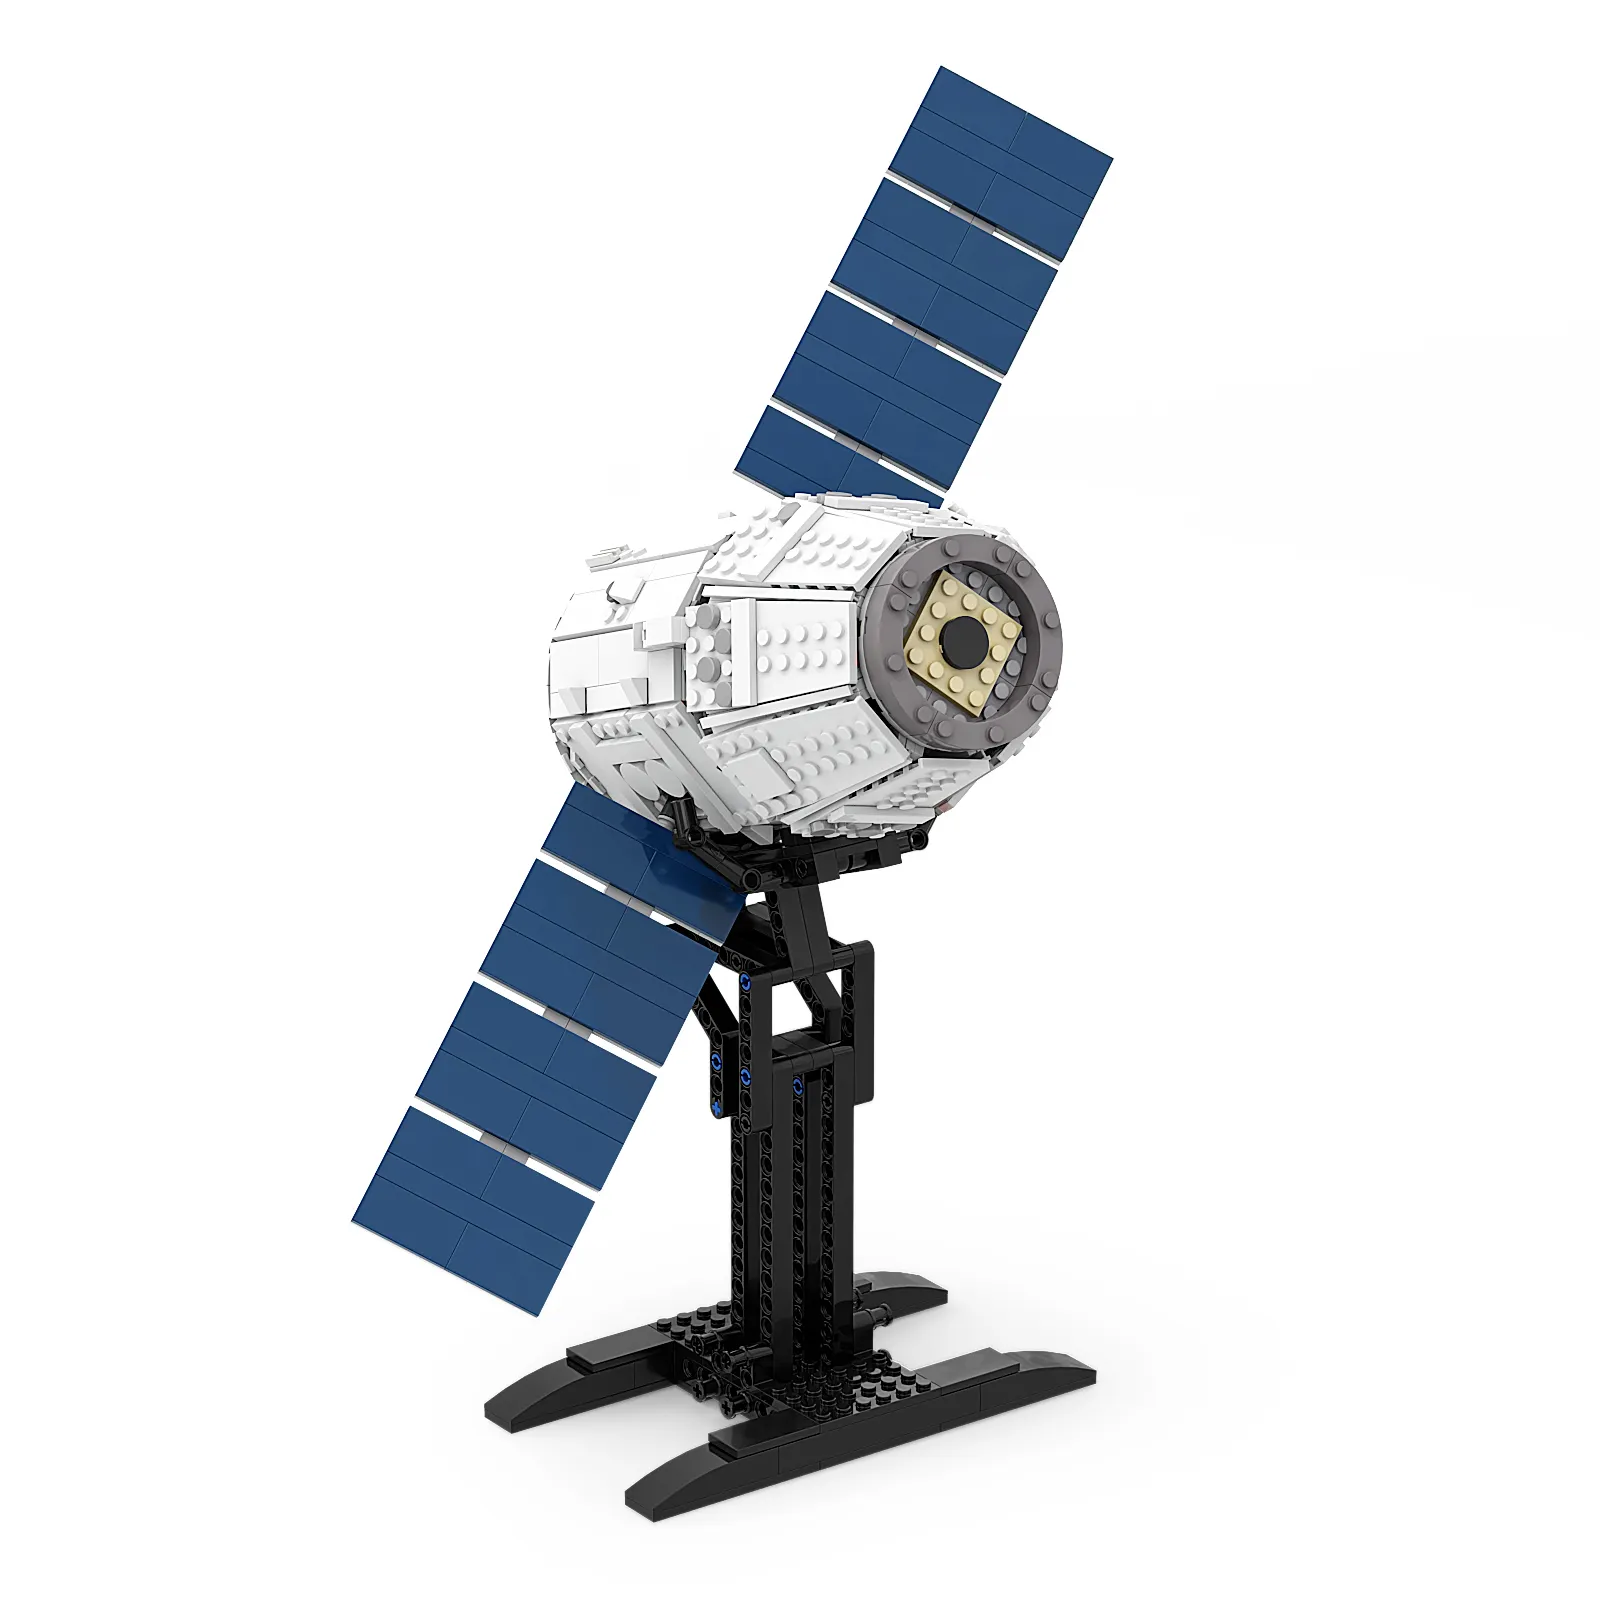 BuildmocスペースシャトルモデルスペースXドラゴンビルディングブロックレンガ宇宙船のおもちゃ